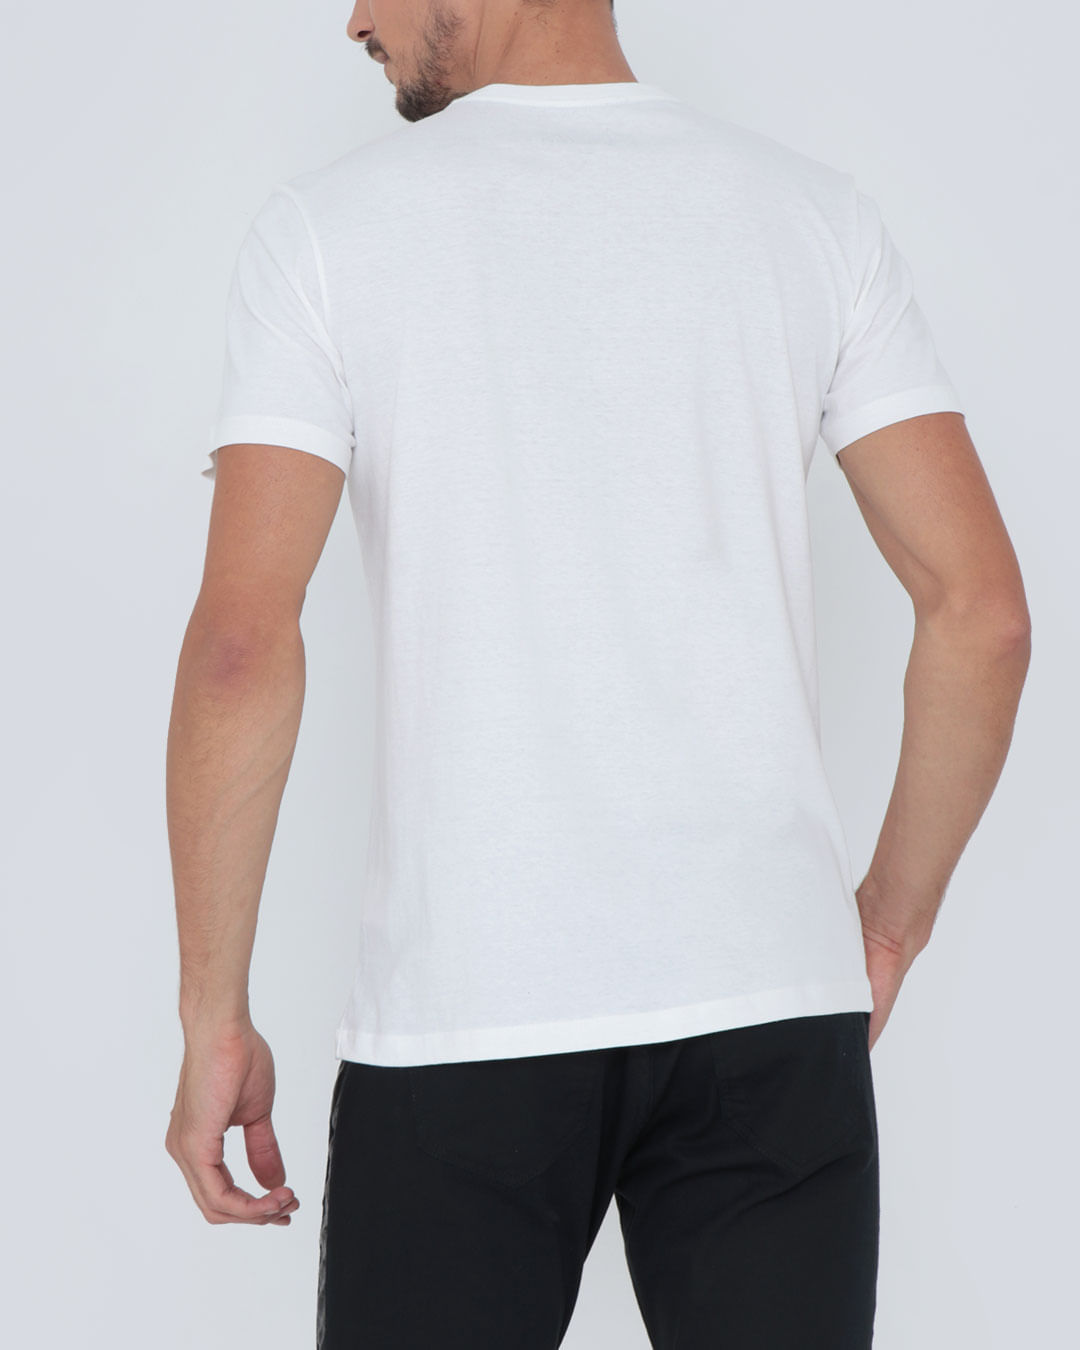 Camiseta-Trd121032-Avengers---Off-White